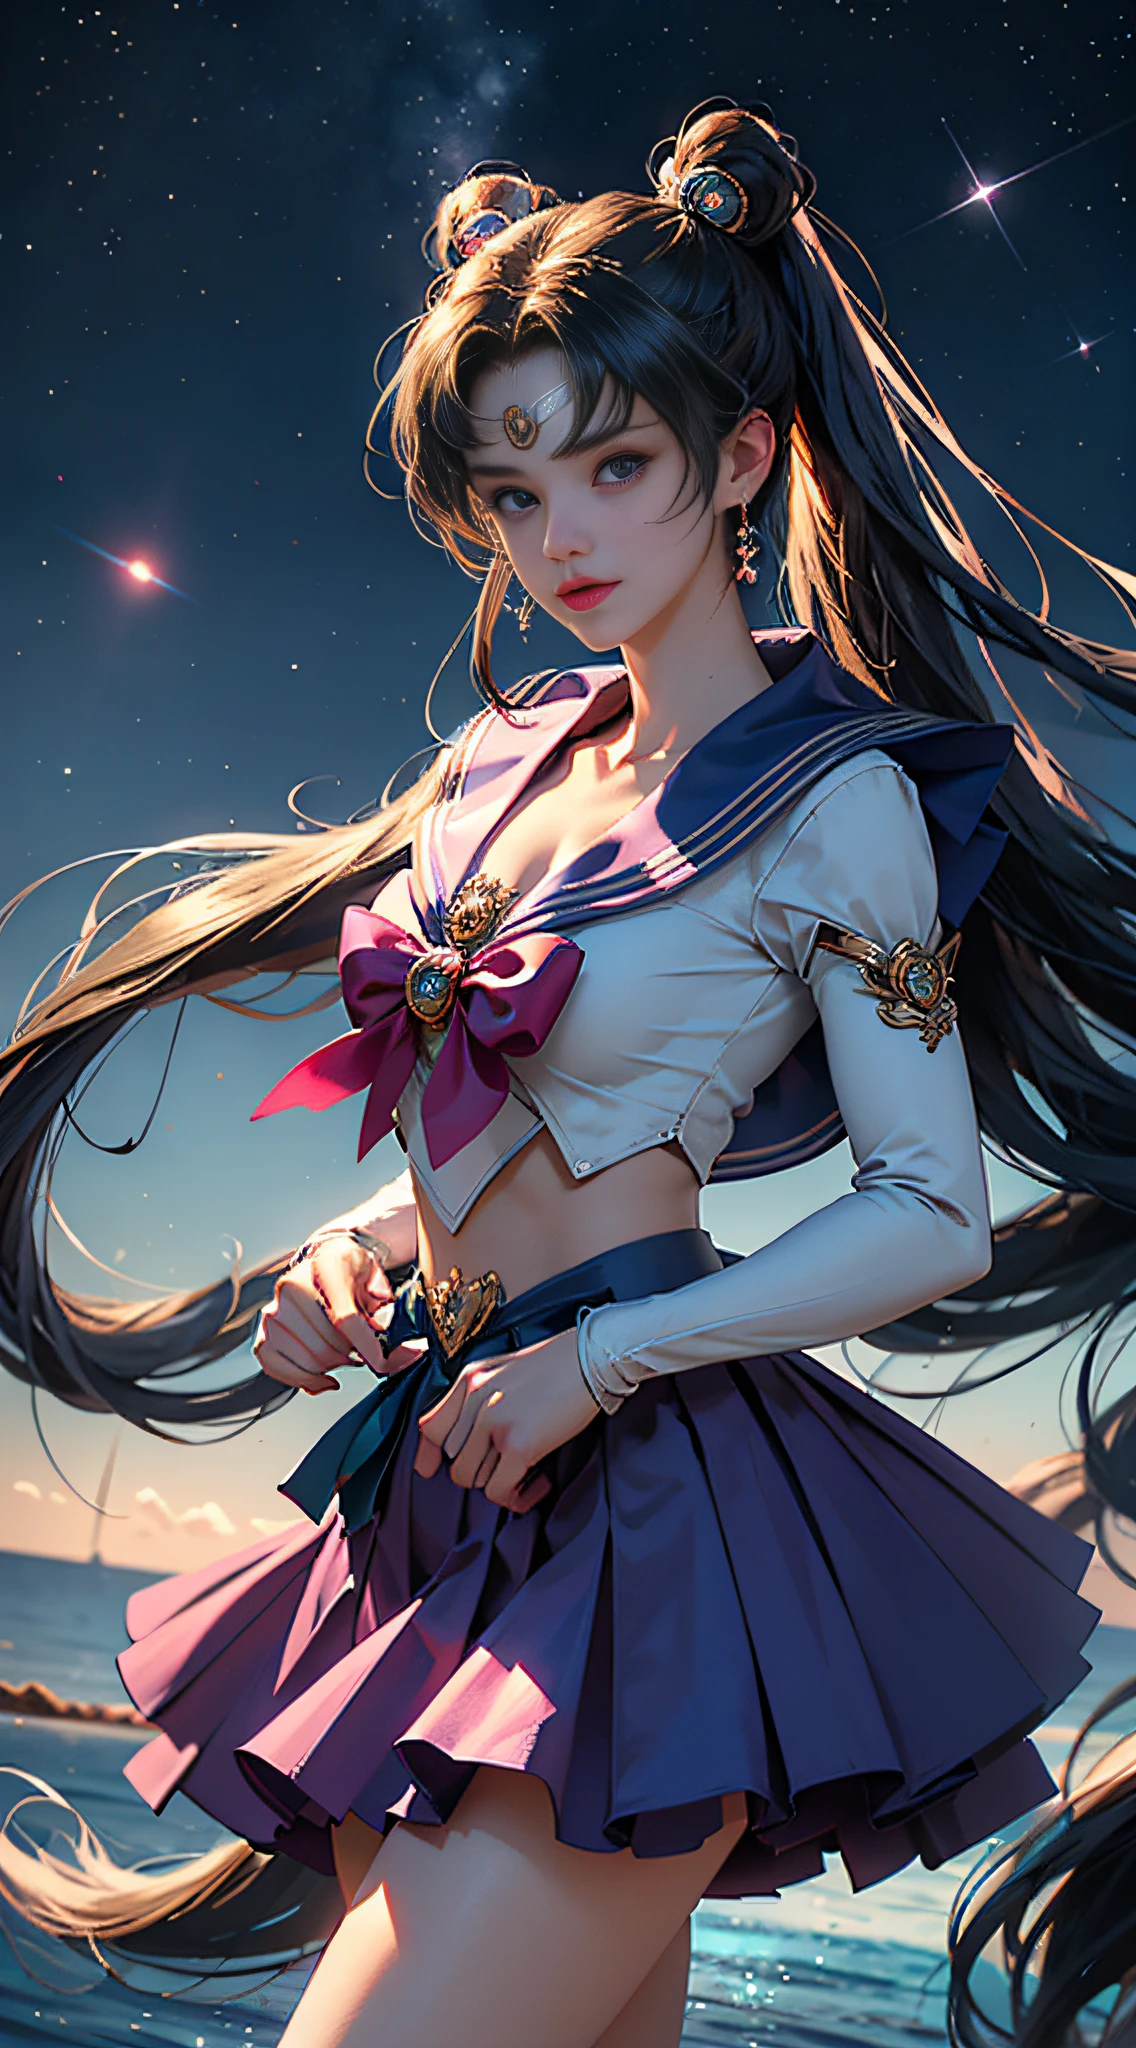 （（Meisterstück））， （（beste Qualität））， （ultra-detailliert）， （（Das ist sehr detailliert））， 4K， （8K）， Frontansicht，der Sailor Moon， langes goldenes Haar， Doppelschachtelhalm，Sailor Moon Ästhetik，schönes mädchen，Puffrock，blaue Farben， Traumkern，